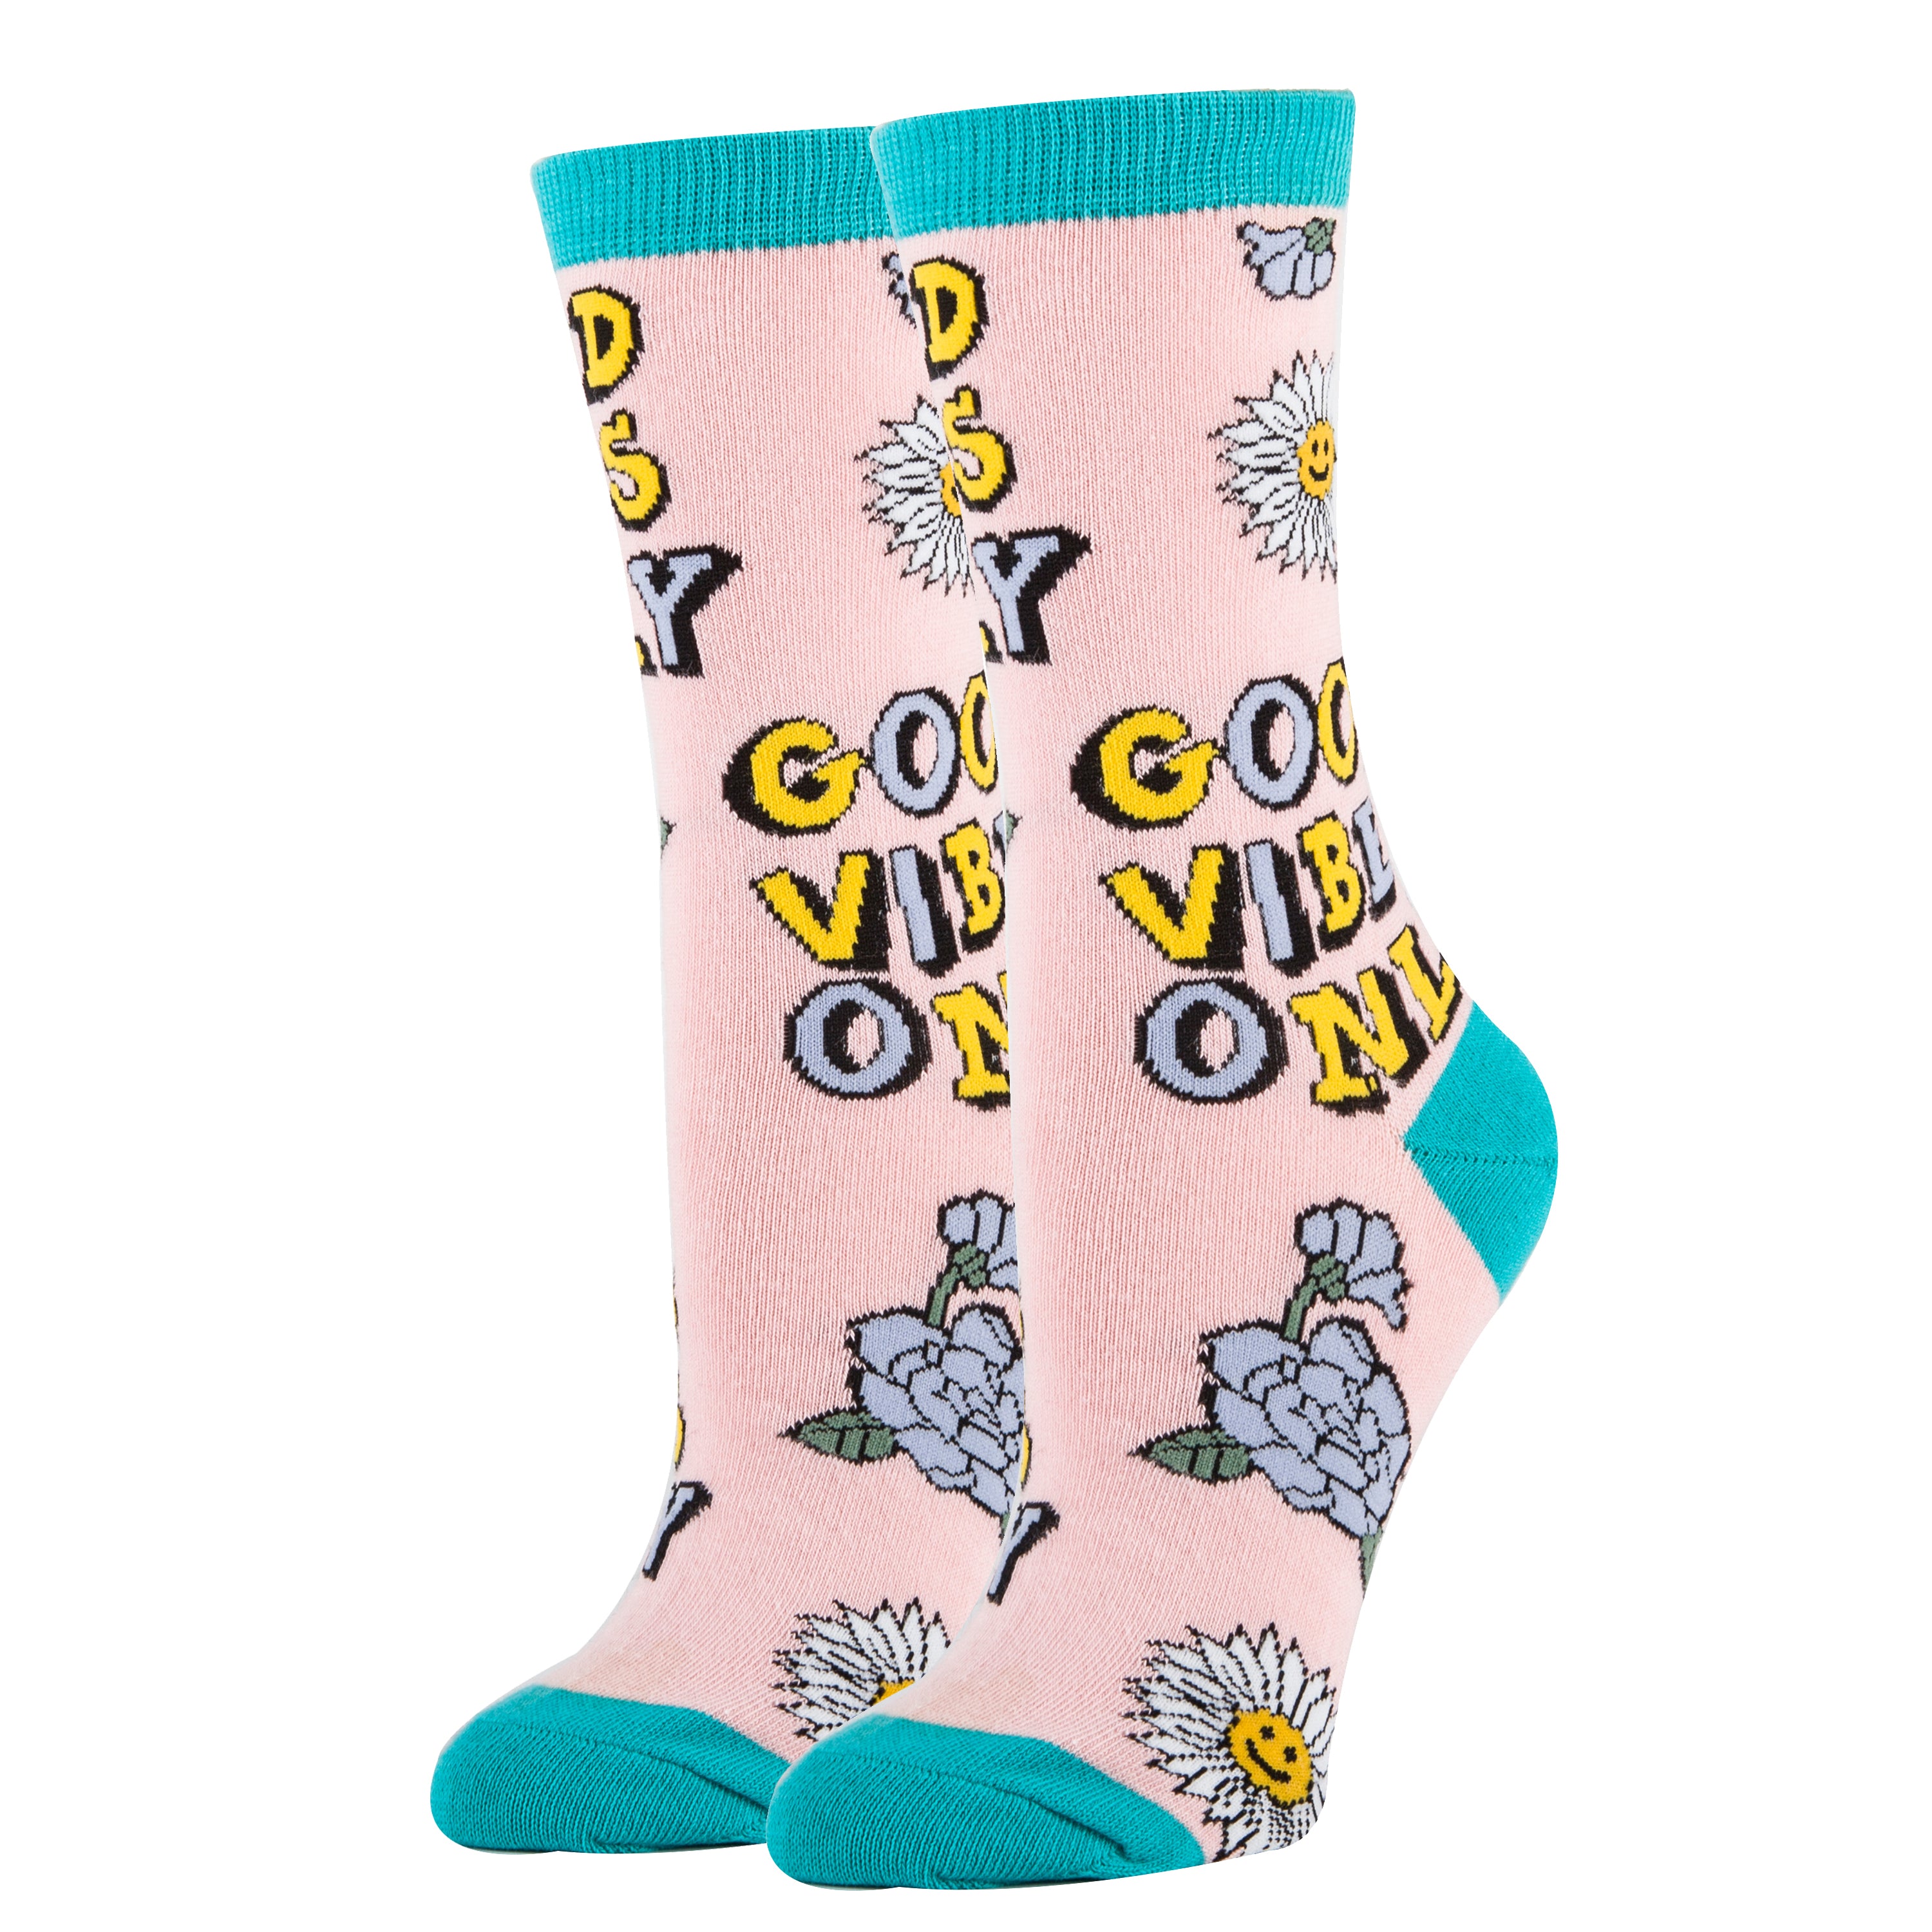 Positive Crew Socks, Novelty Socks For Women